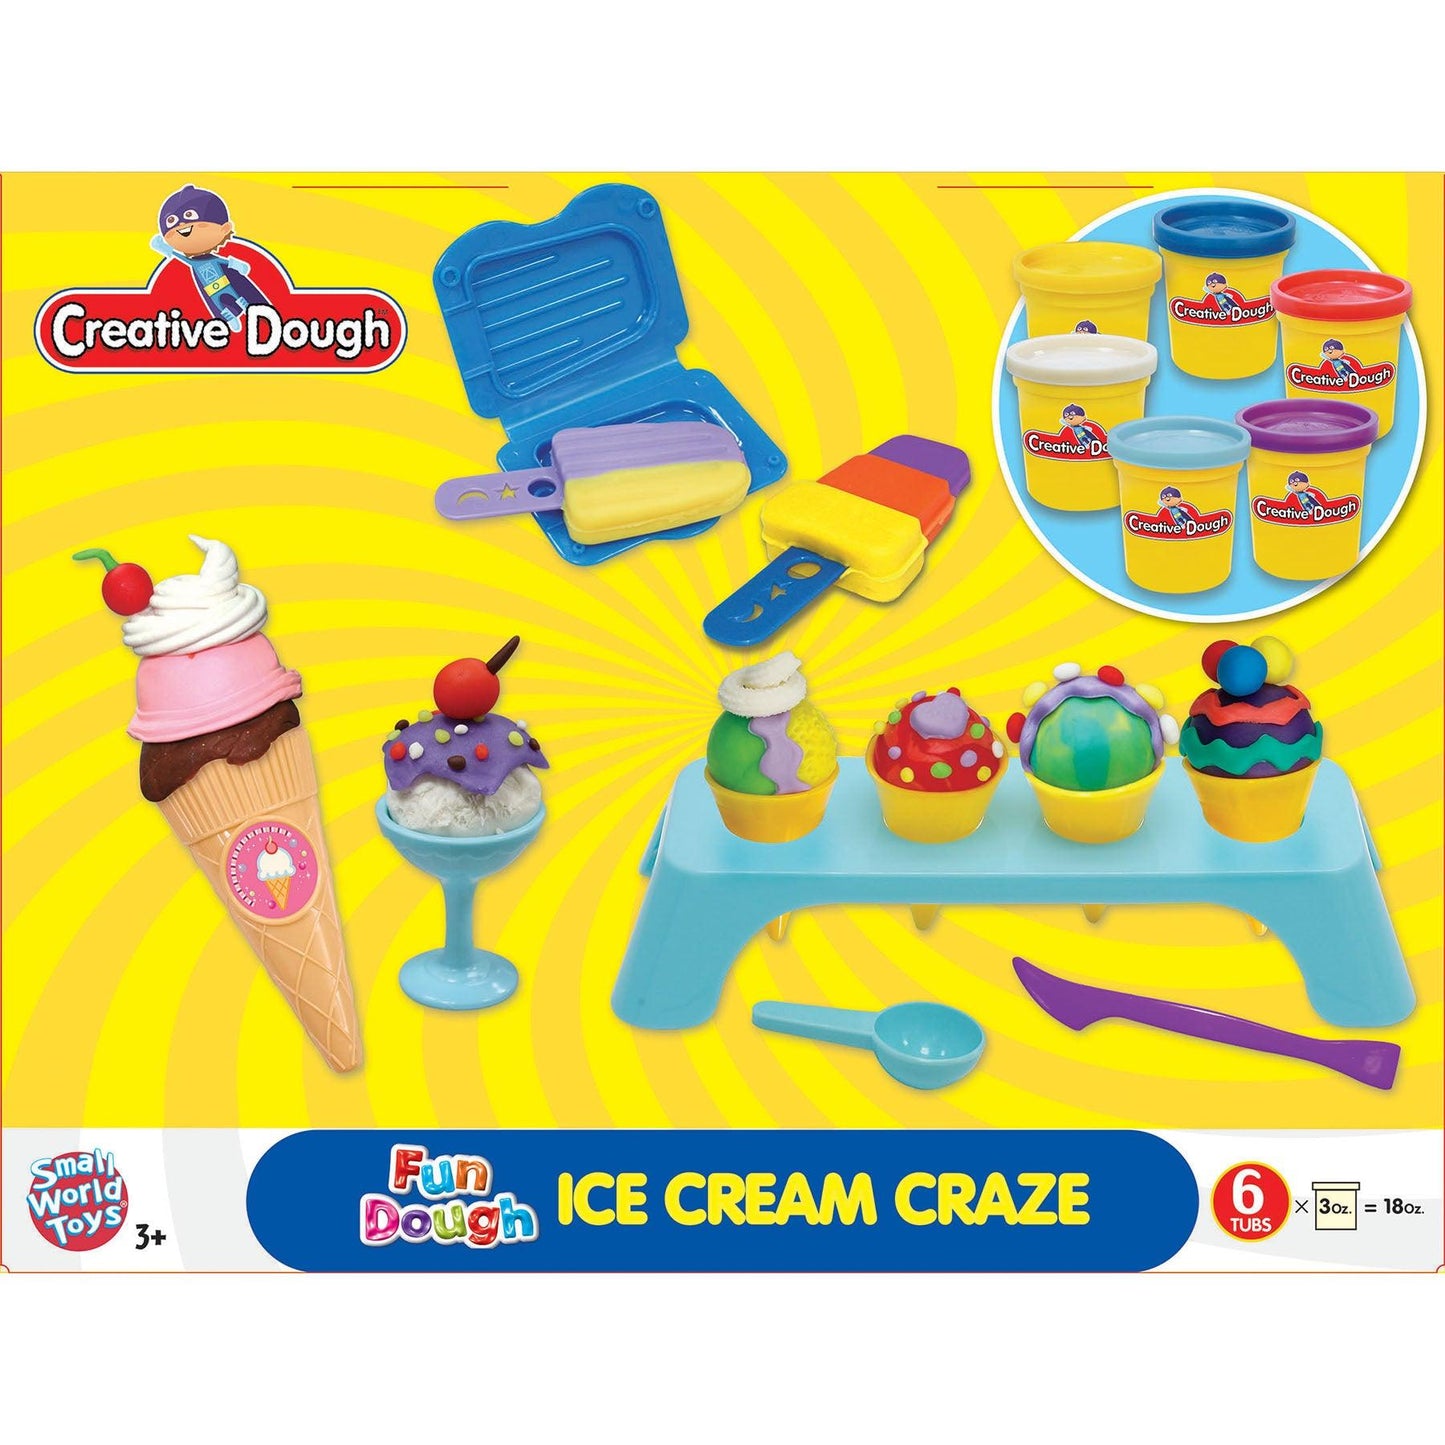 Creative Dough Fun Dough Activity Set - Ice Cream Craze